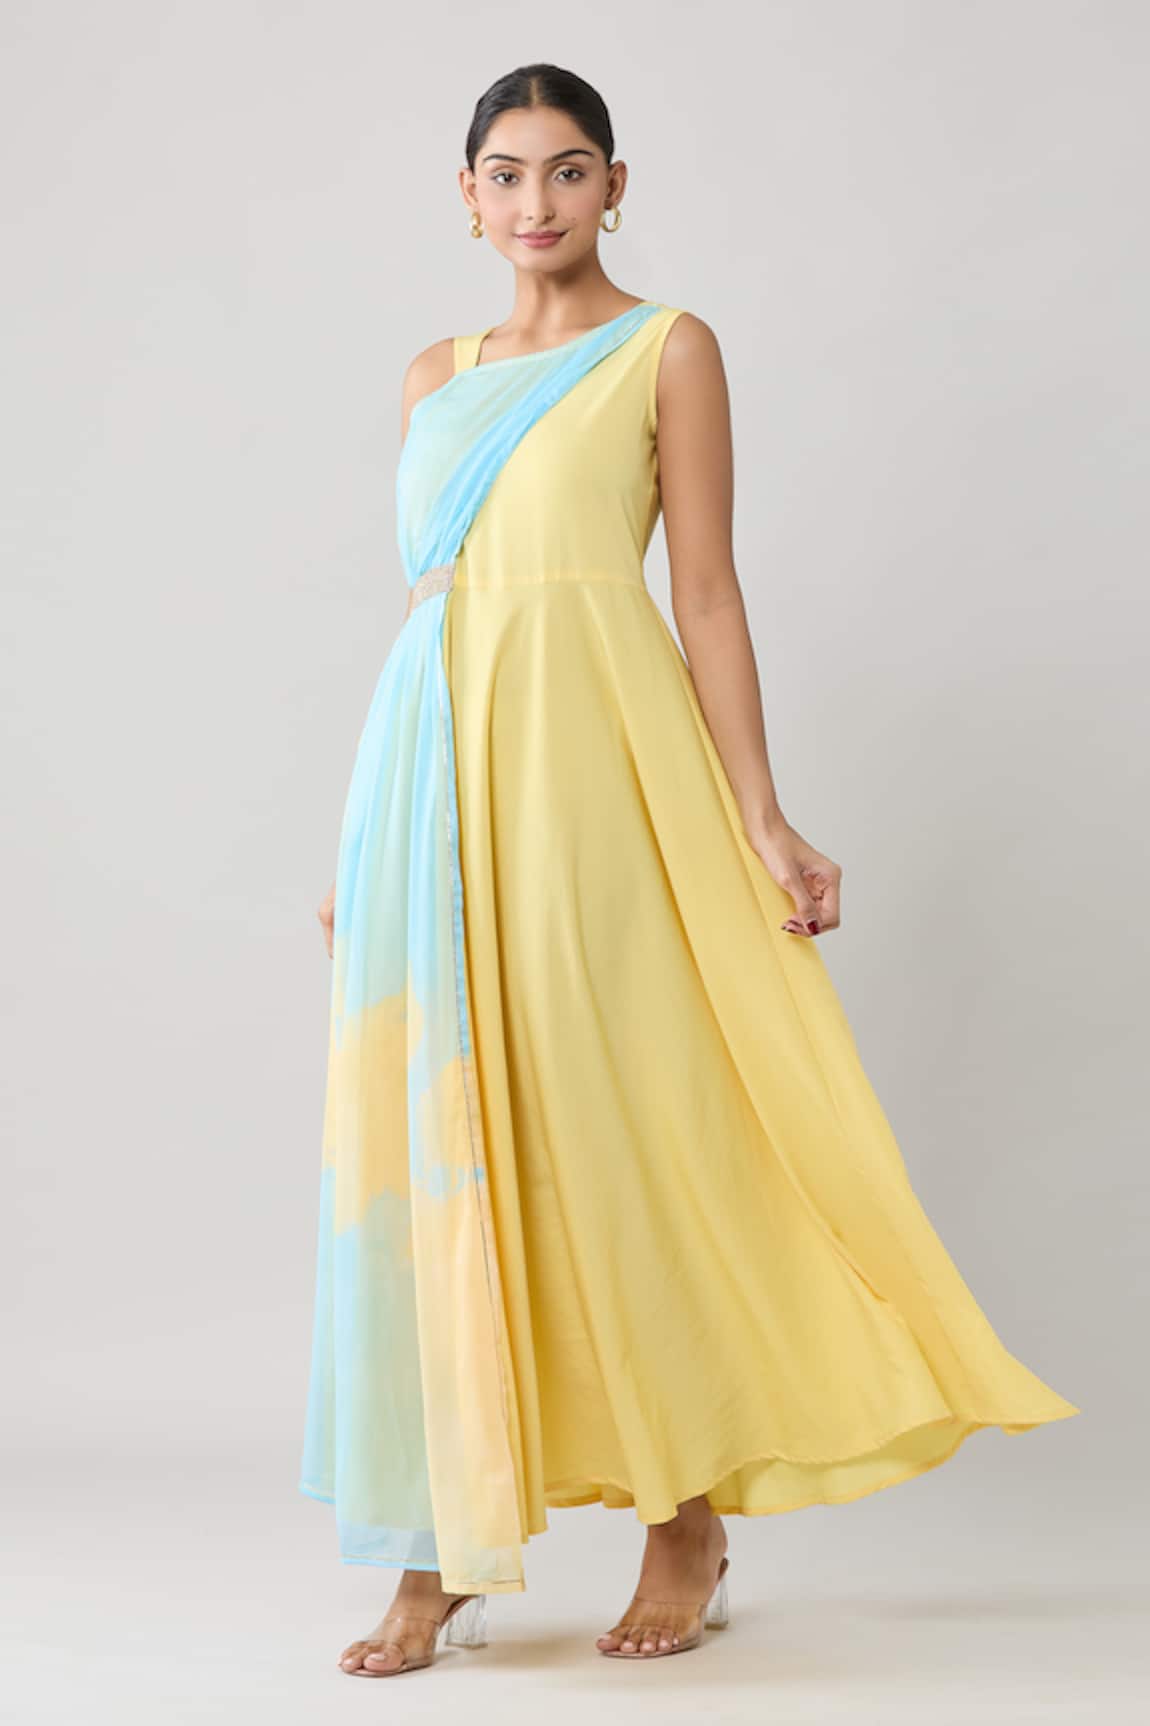 Adara Khan Draped Colorblock Maxi Dress